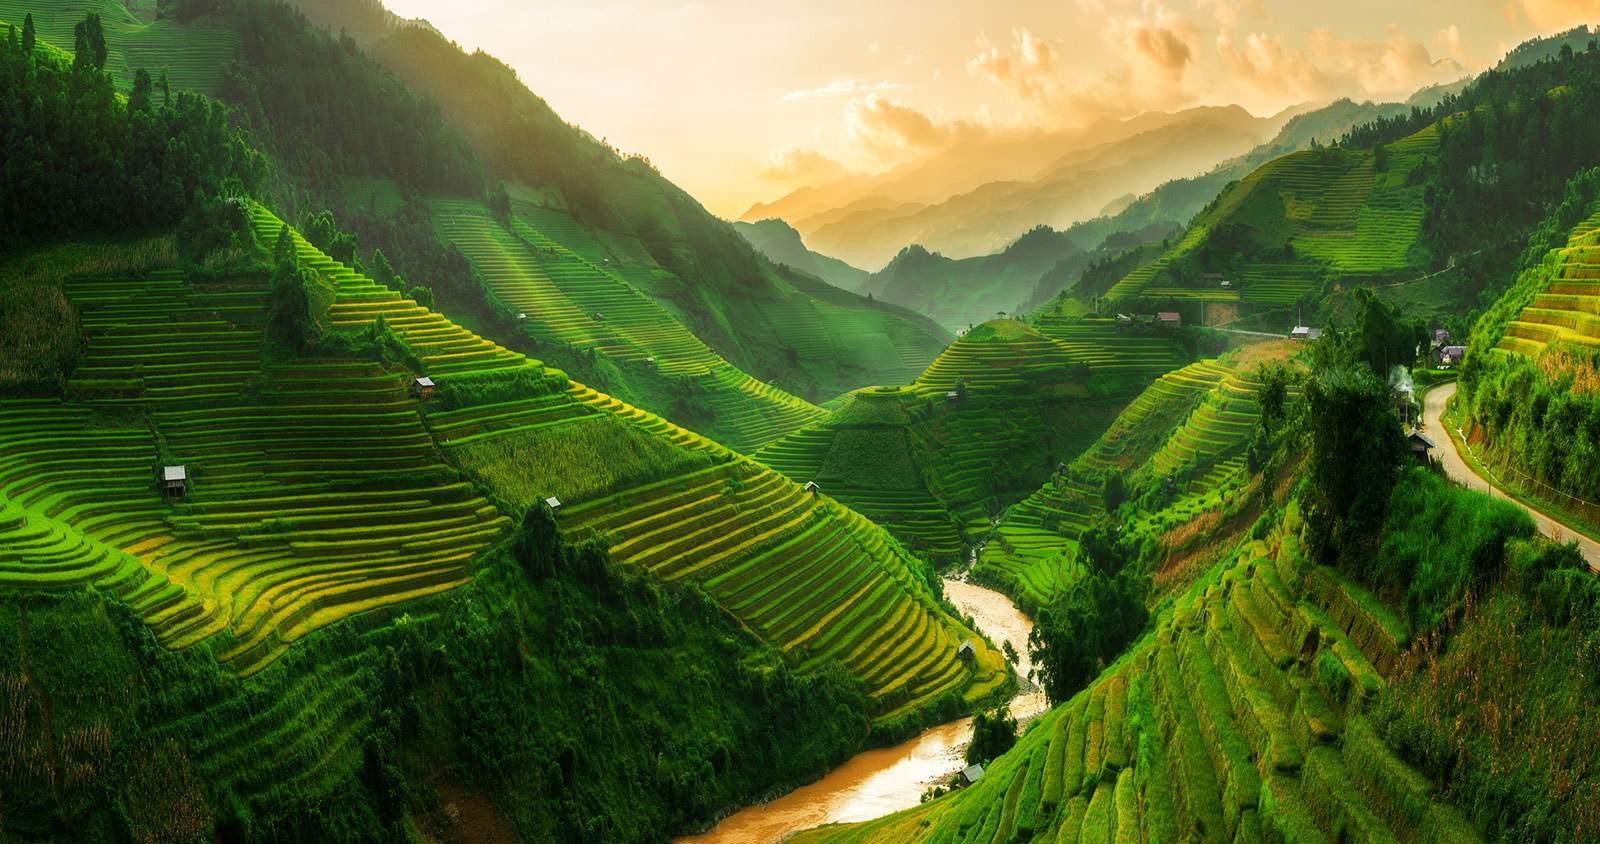 Du lịch Việt Nam dành cho người yêu sự yên tĩnh